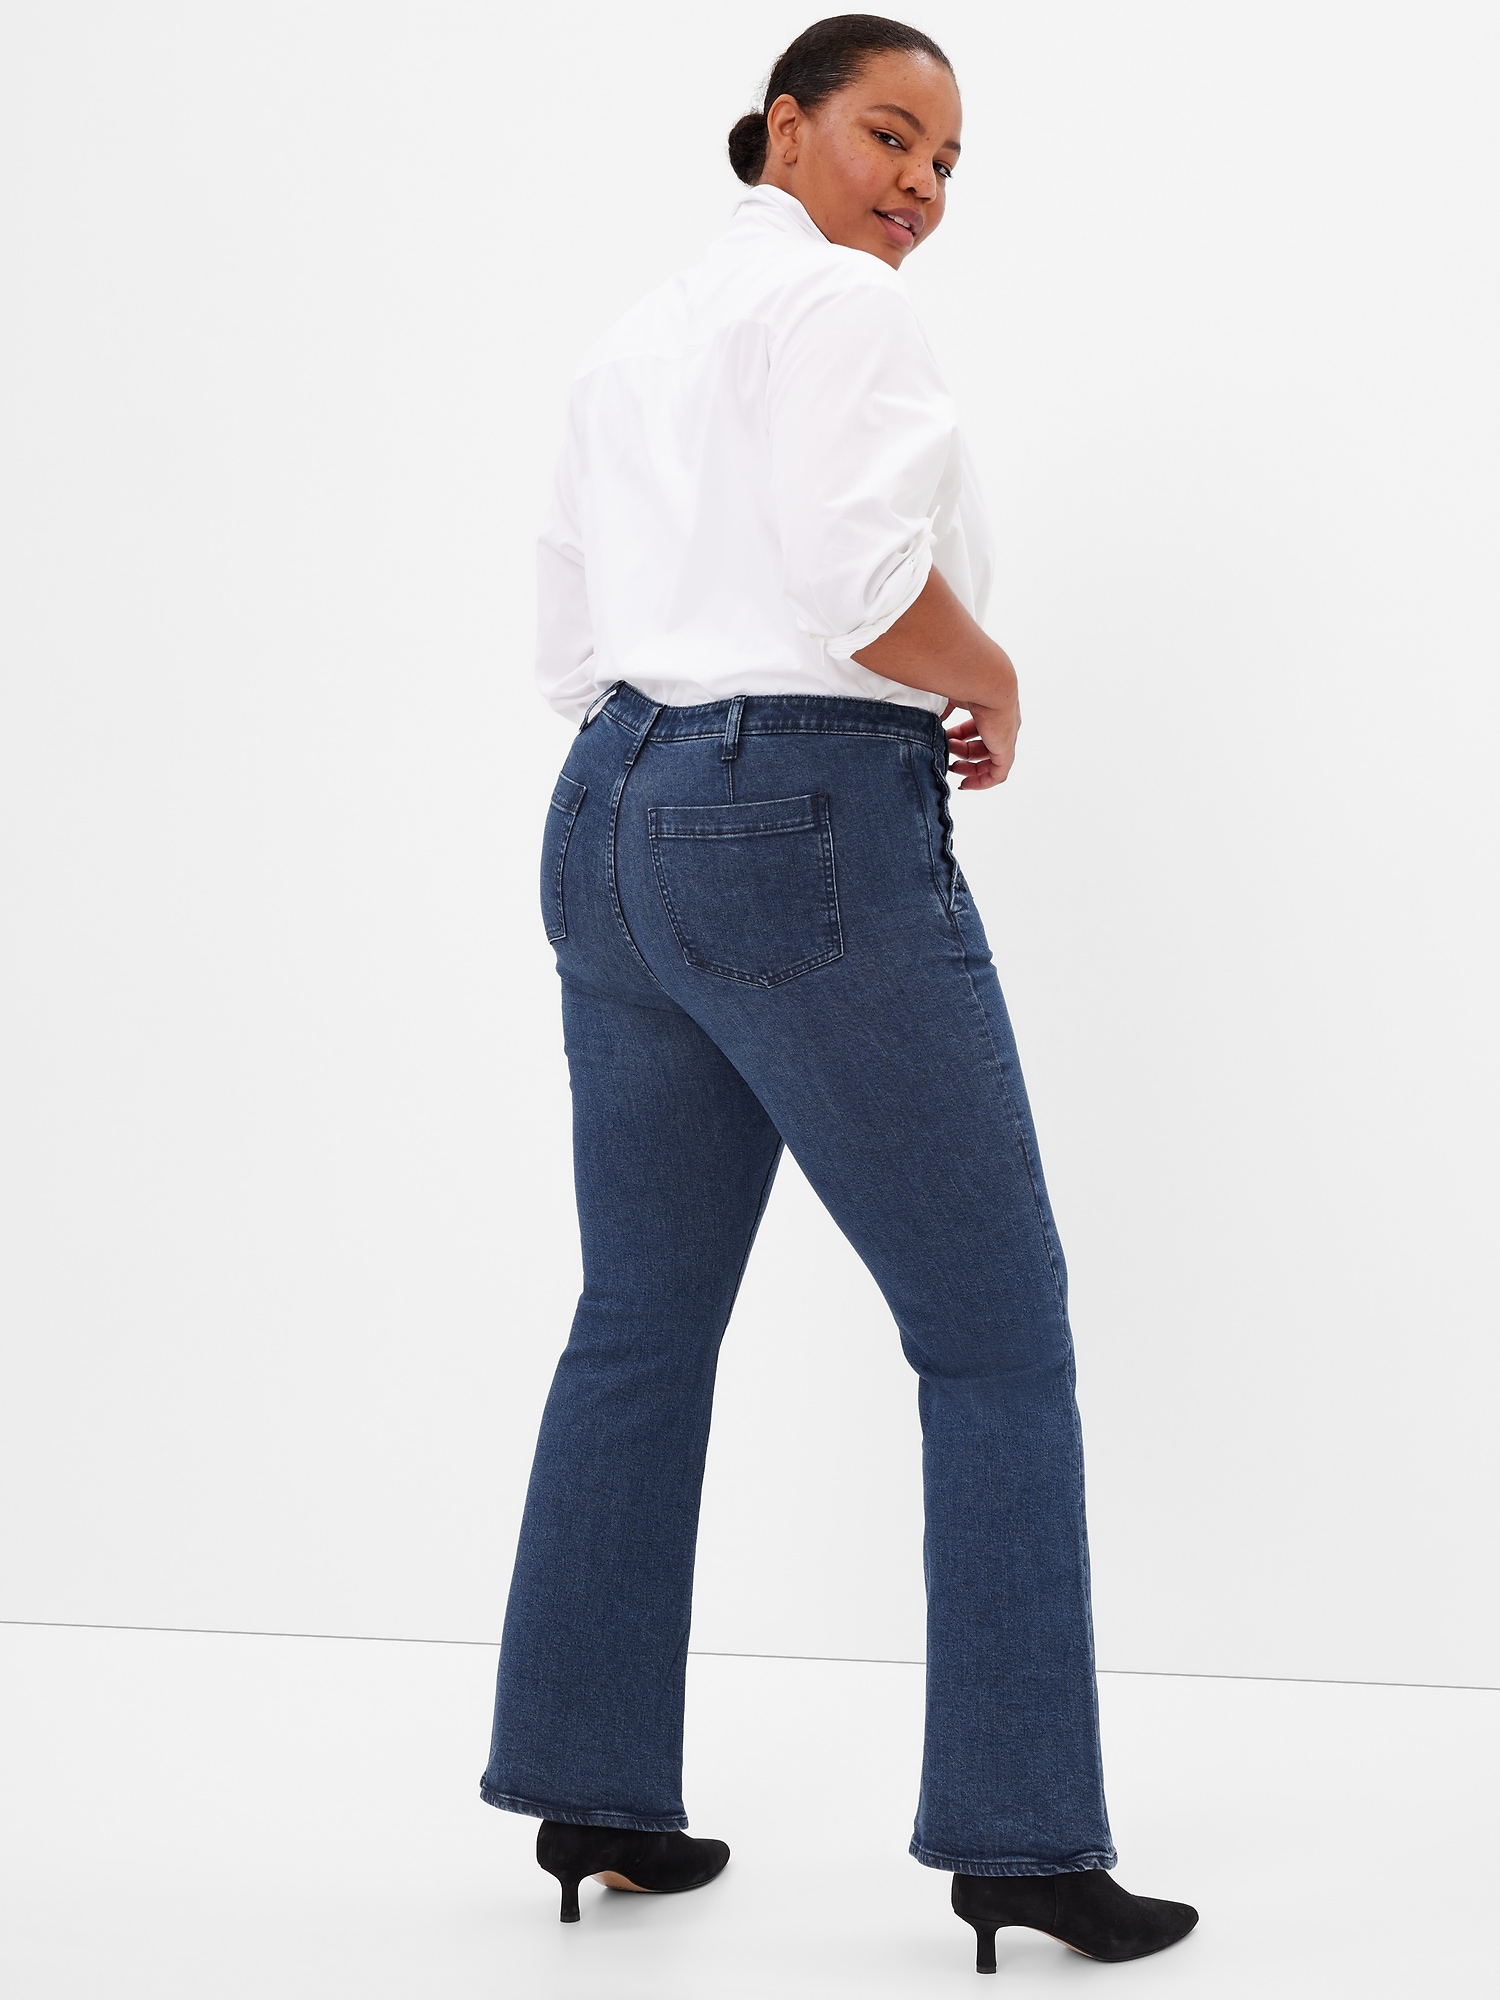 Levi's® 70's High Rise Flare Leg Stretch Denim Jeans